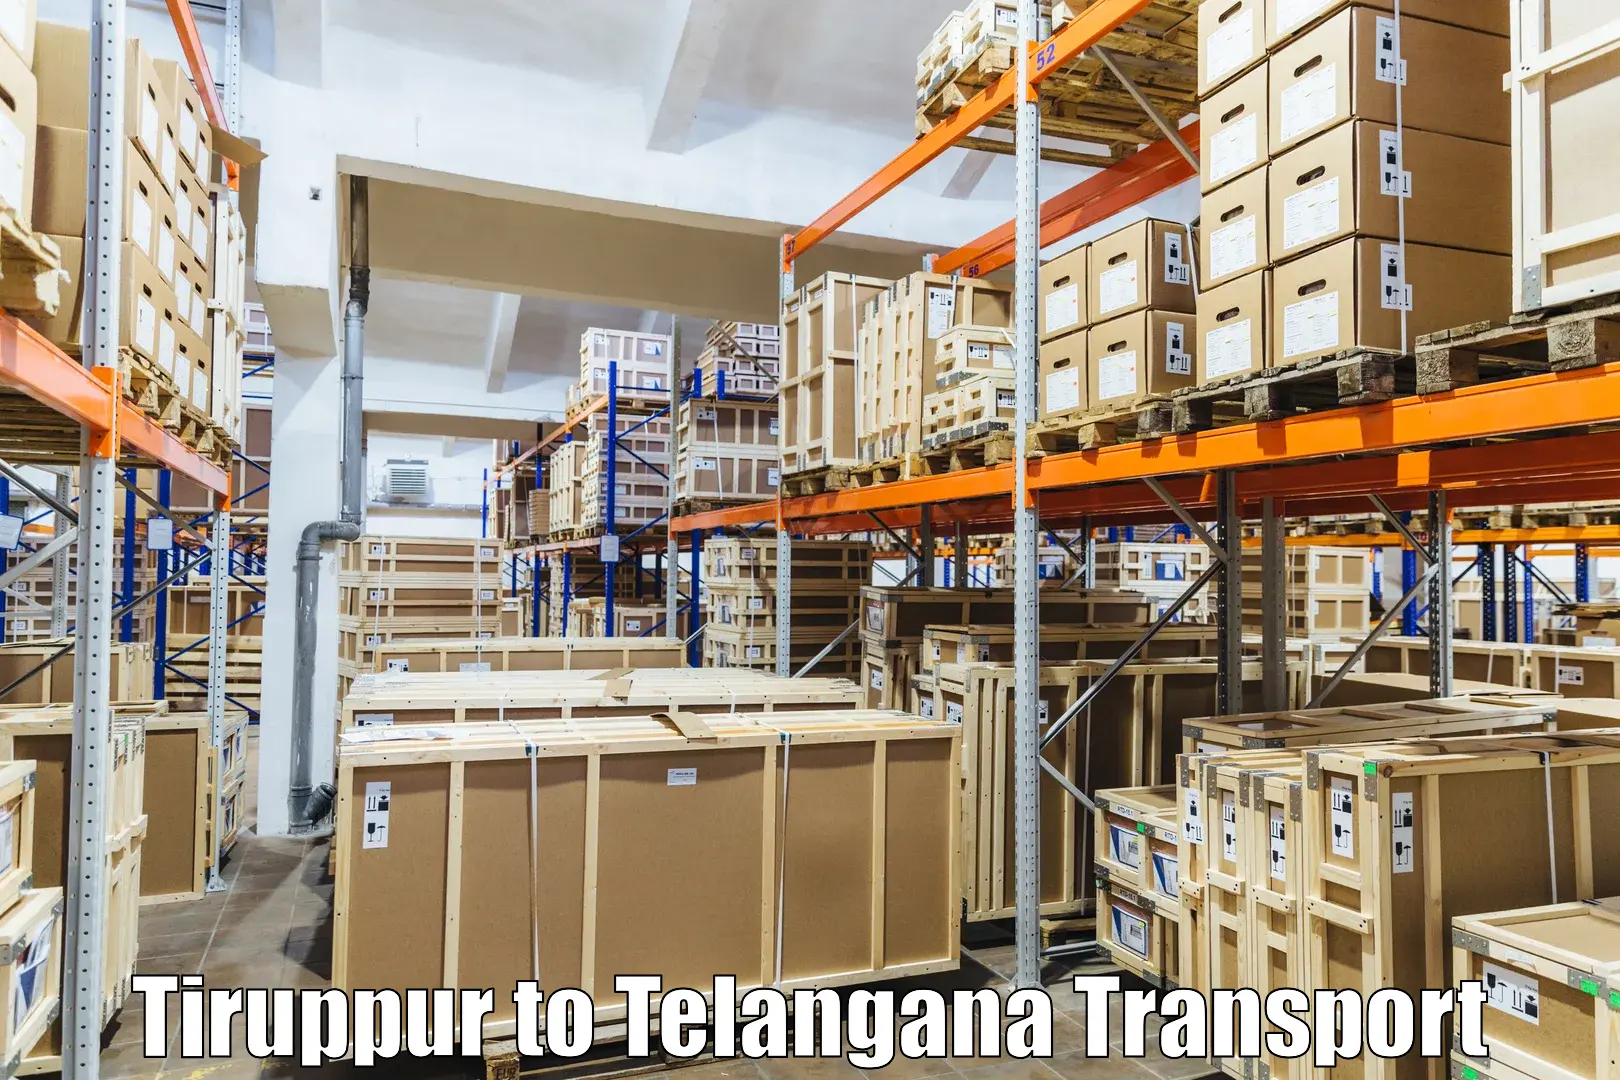 International cargo transportation services Tiruppur to Mahabubnagar